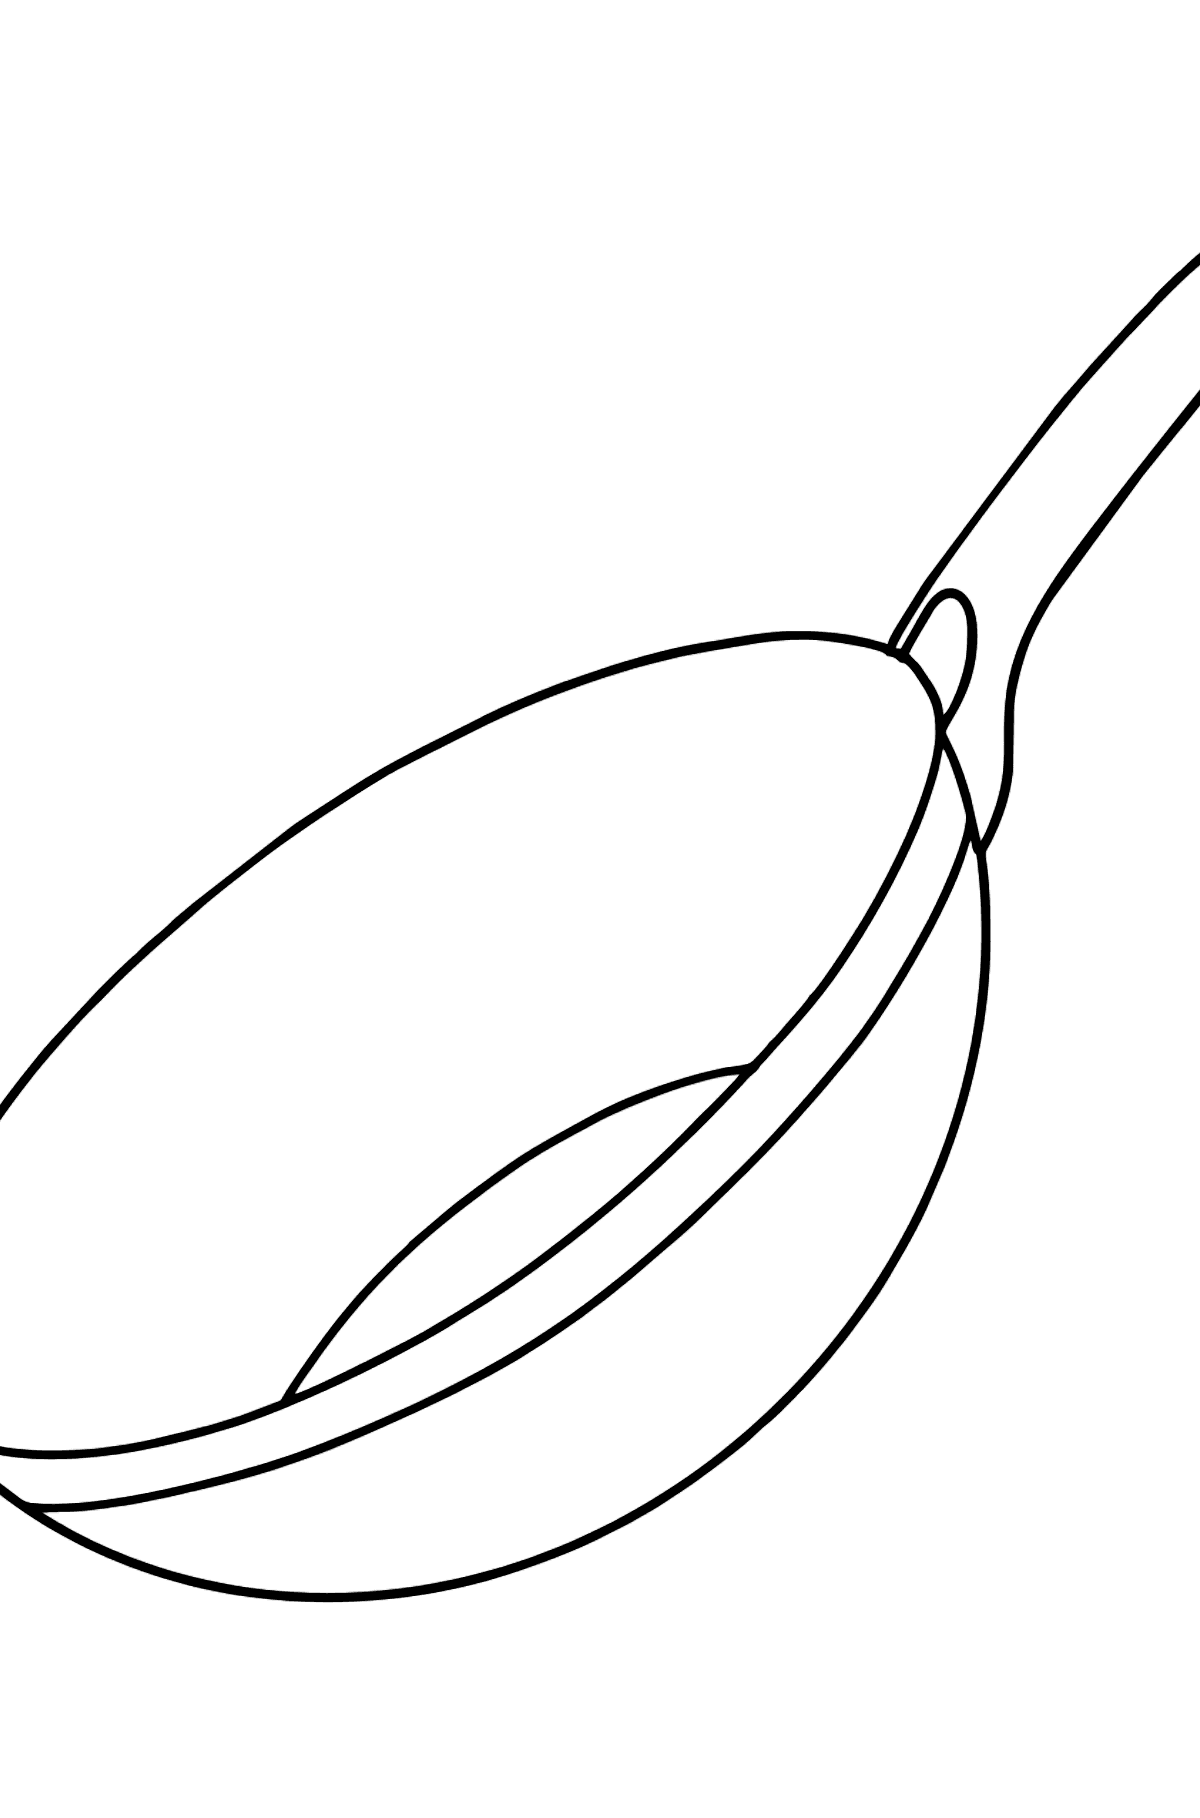 Desenho para colorir de panela wok - Imagens para Colorir para Crianças